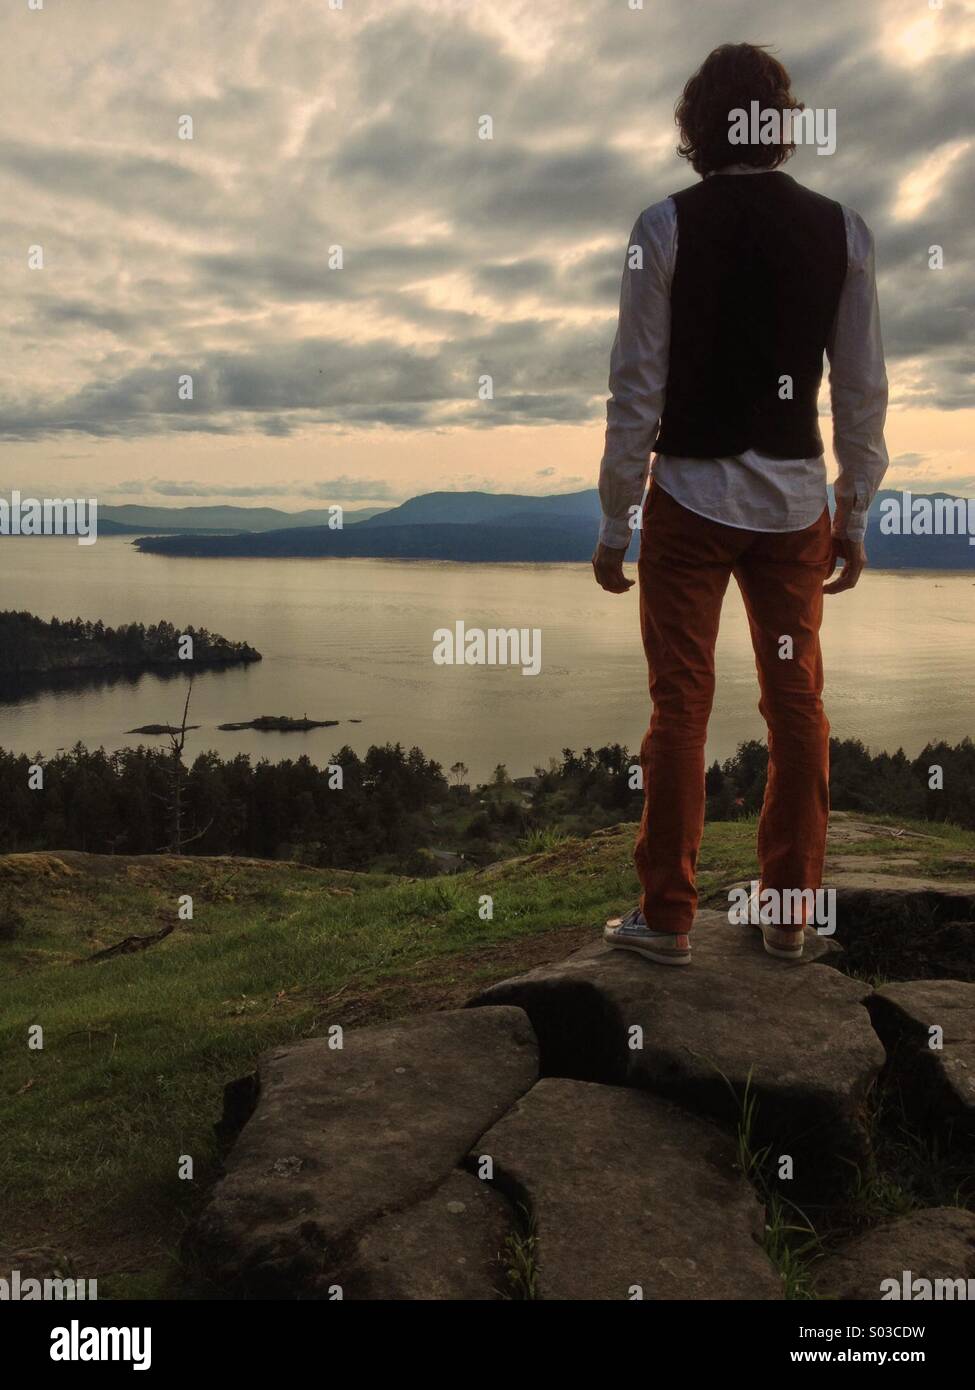 Ben vestito uomo in piedi sulla parte superiore di alta collina con vista sull'oceano/acqua e isole. Foto Stock